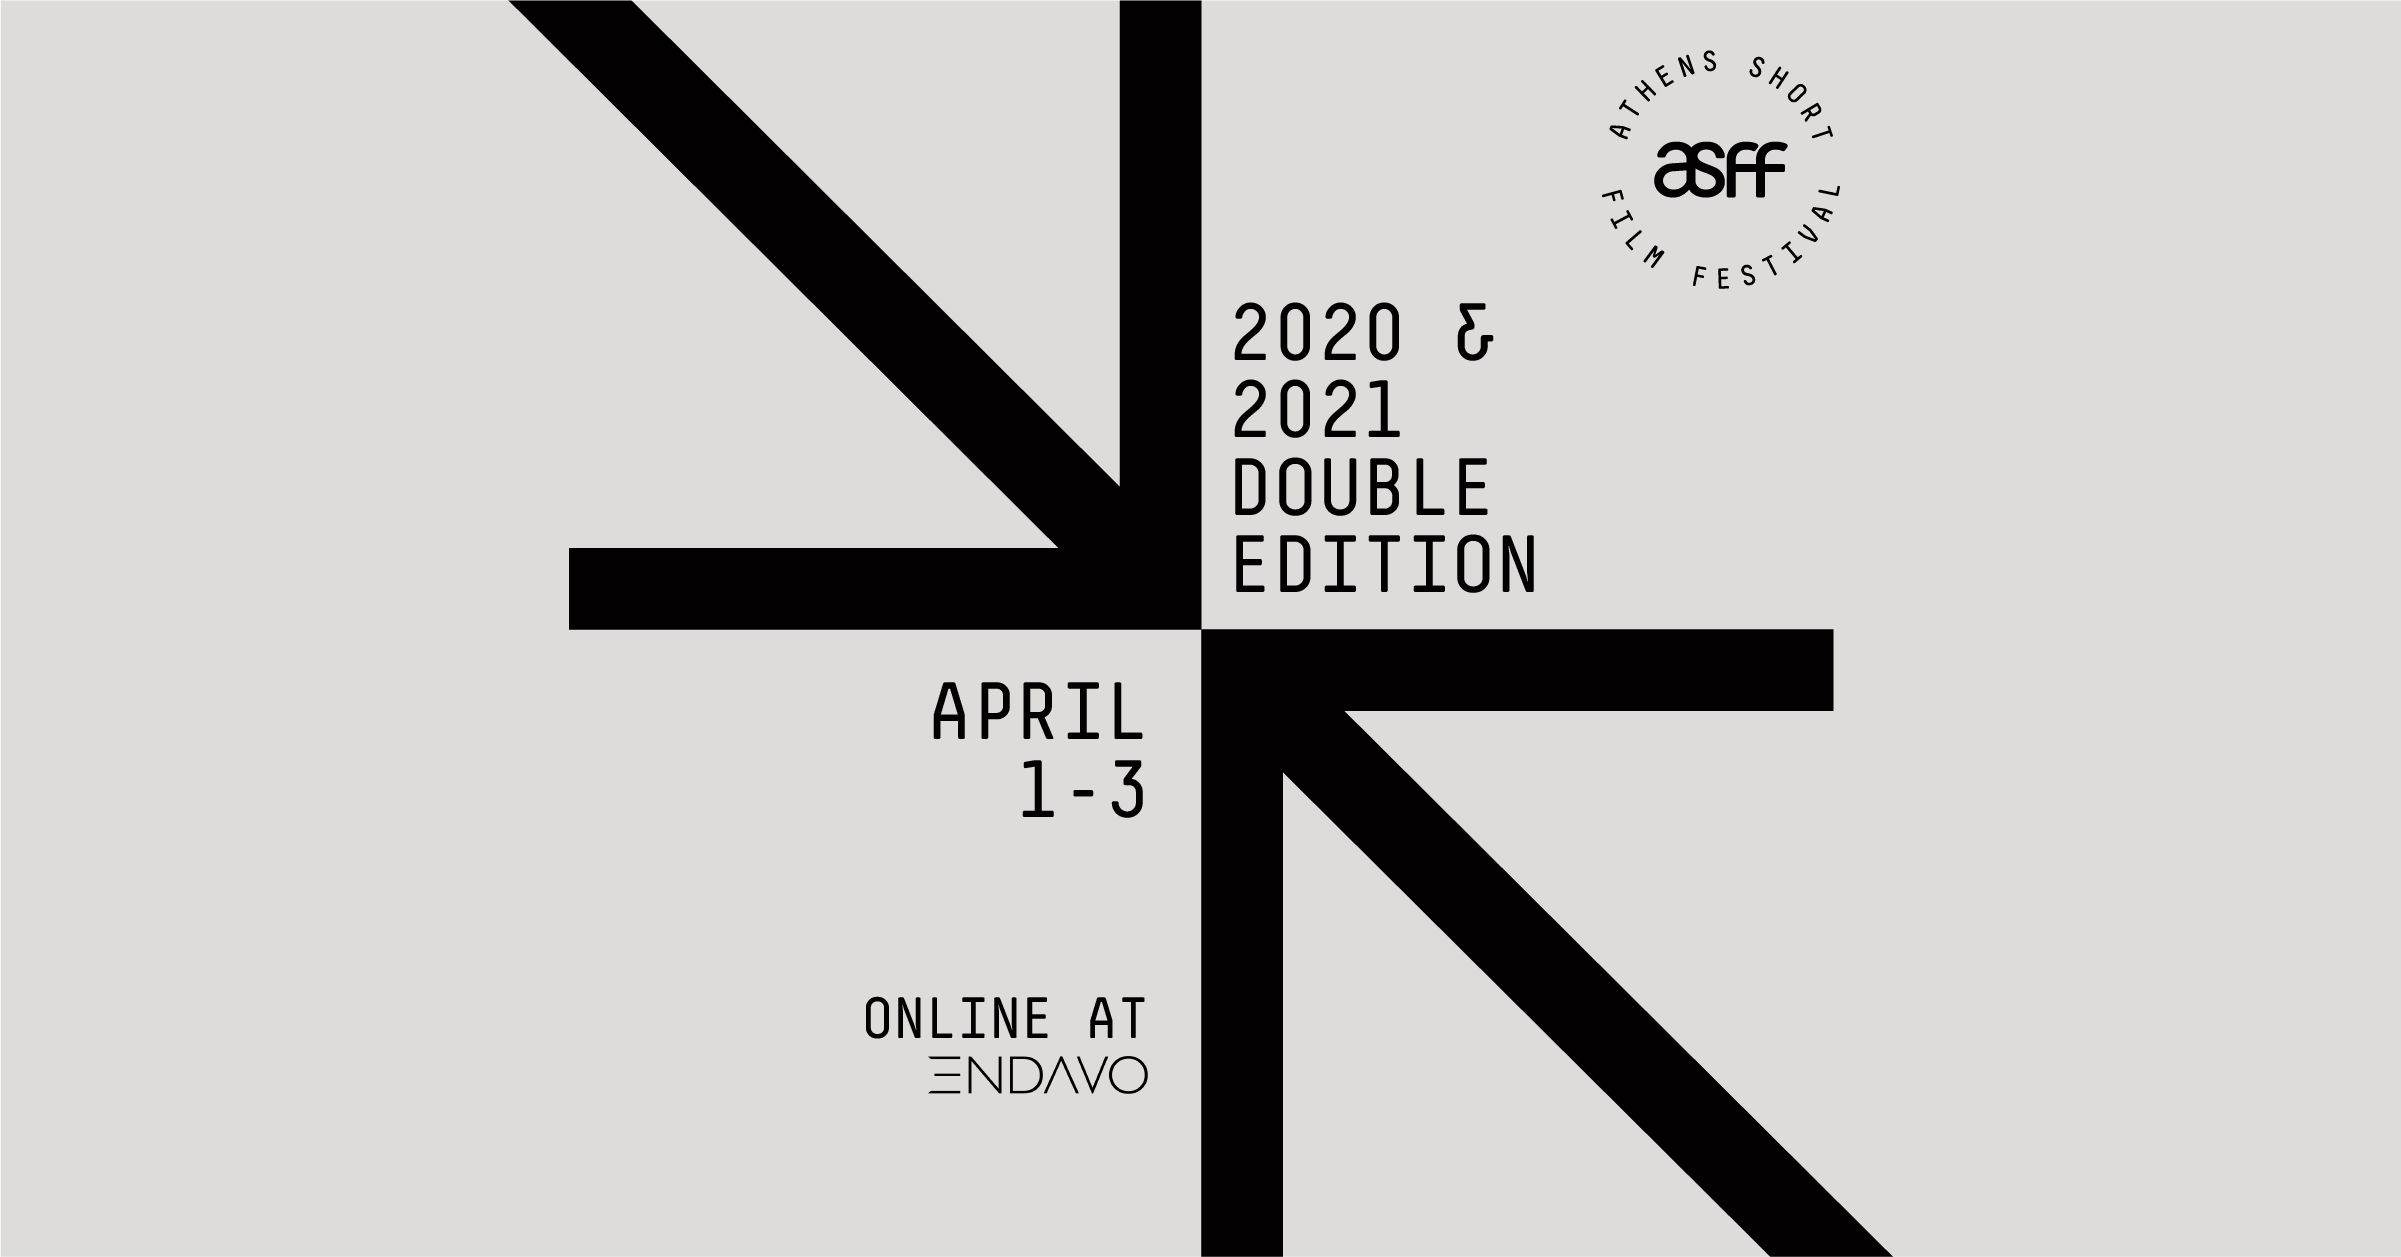 ASFF 2020 & 2021